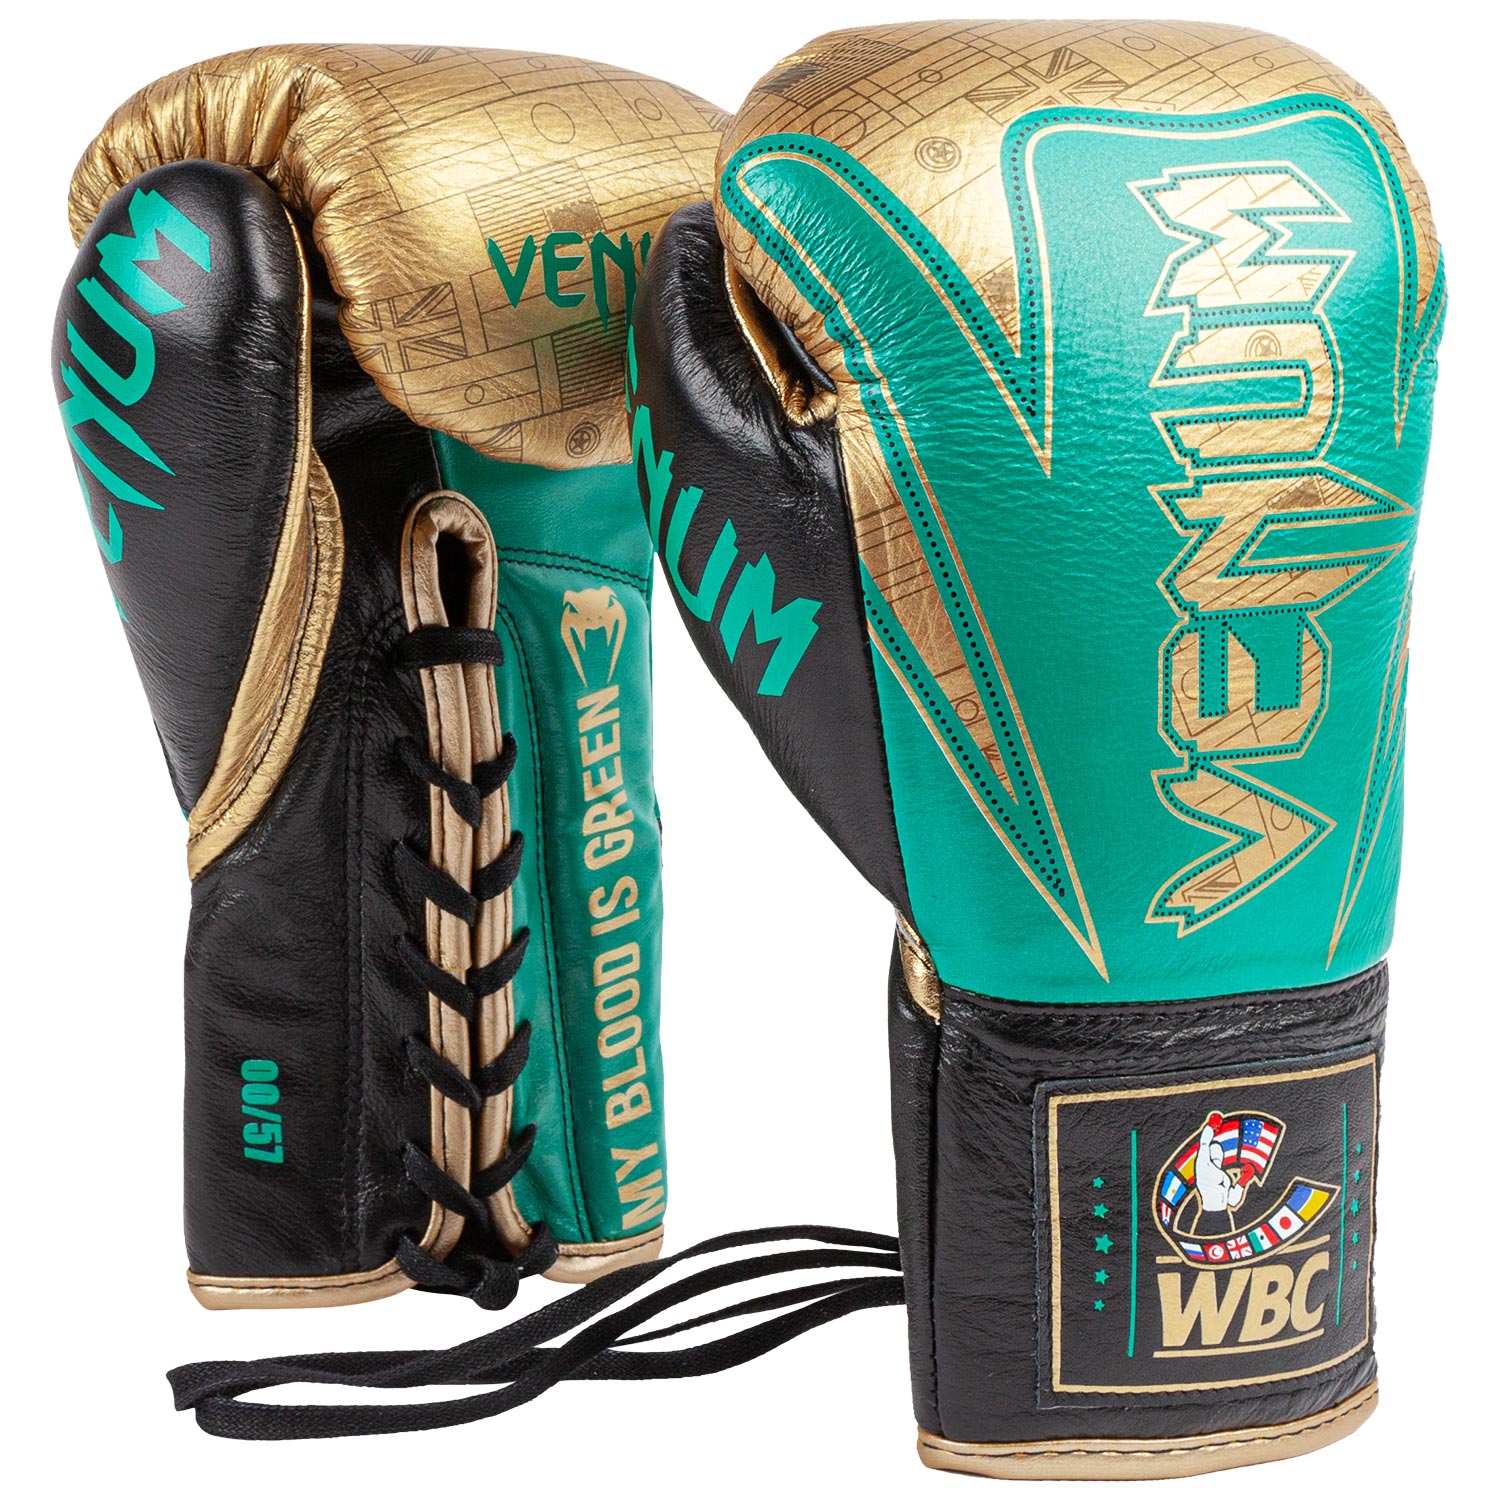 Auflage WBC Boxhandschuhe M - – Schweiz limitierte Venum Venum professionelle HAMMER -